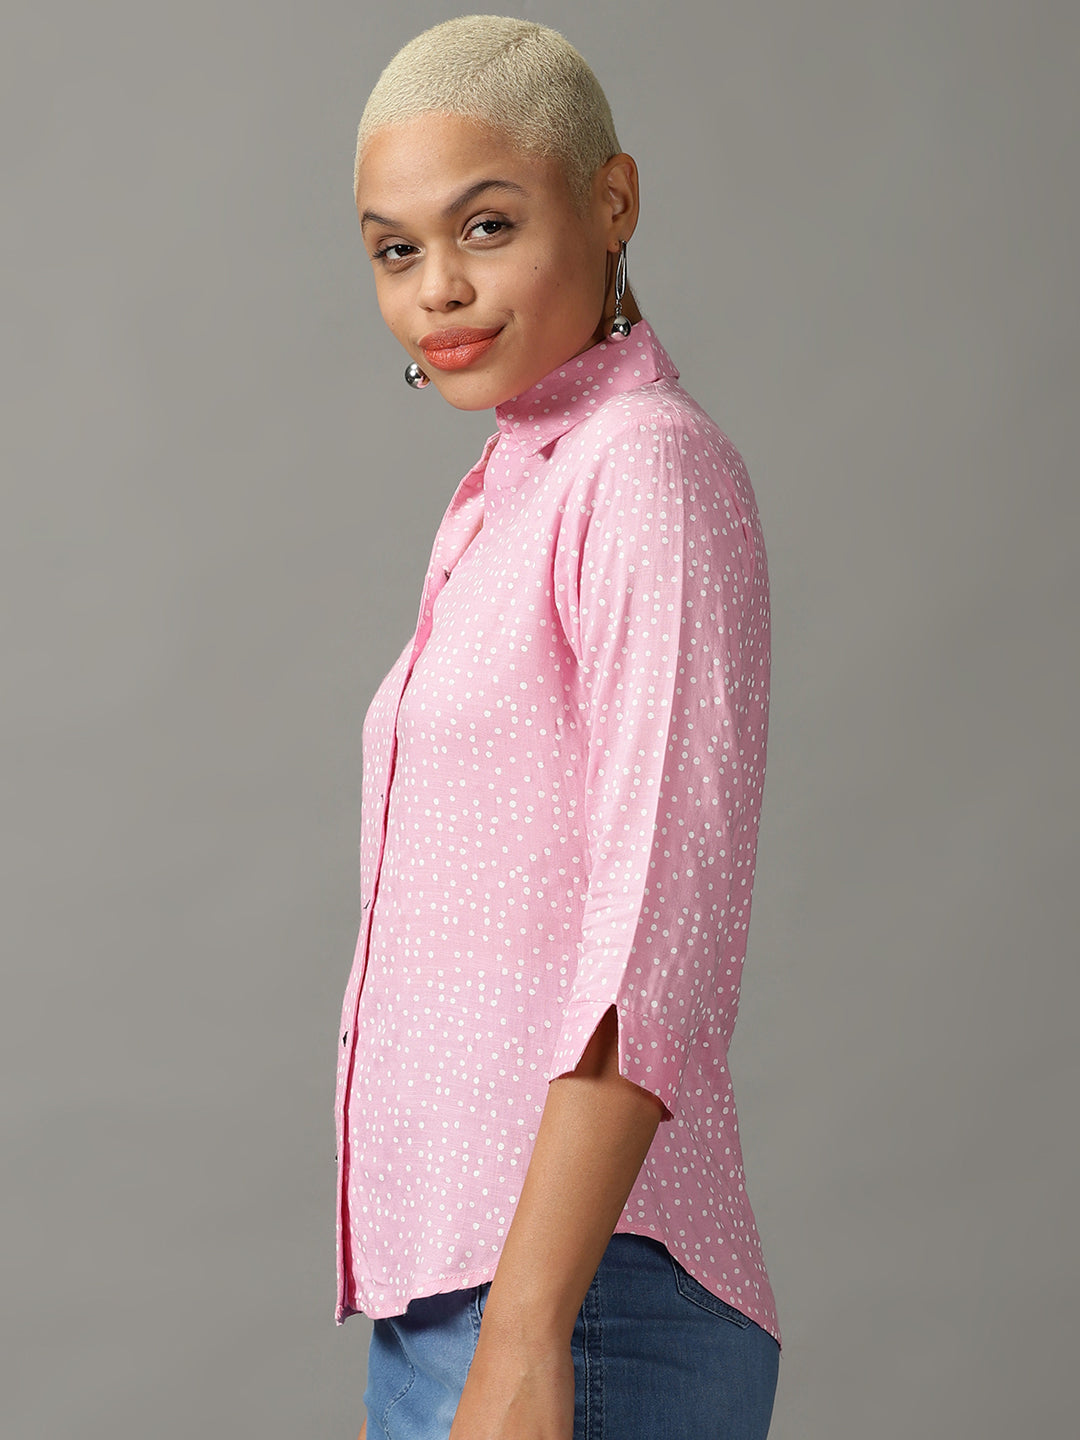 Women's Pink Printed Shirt